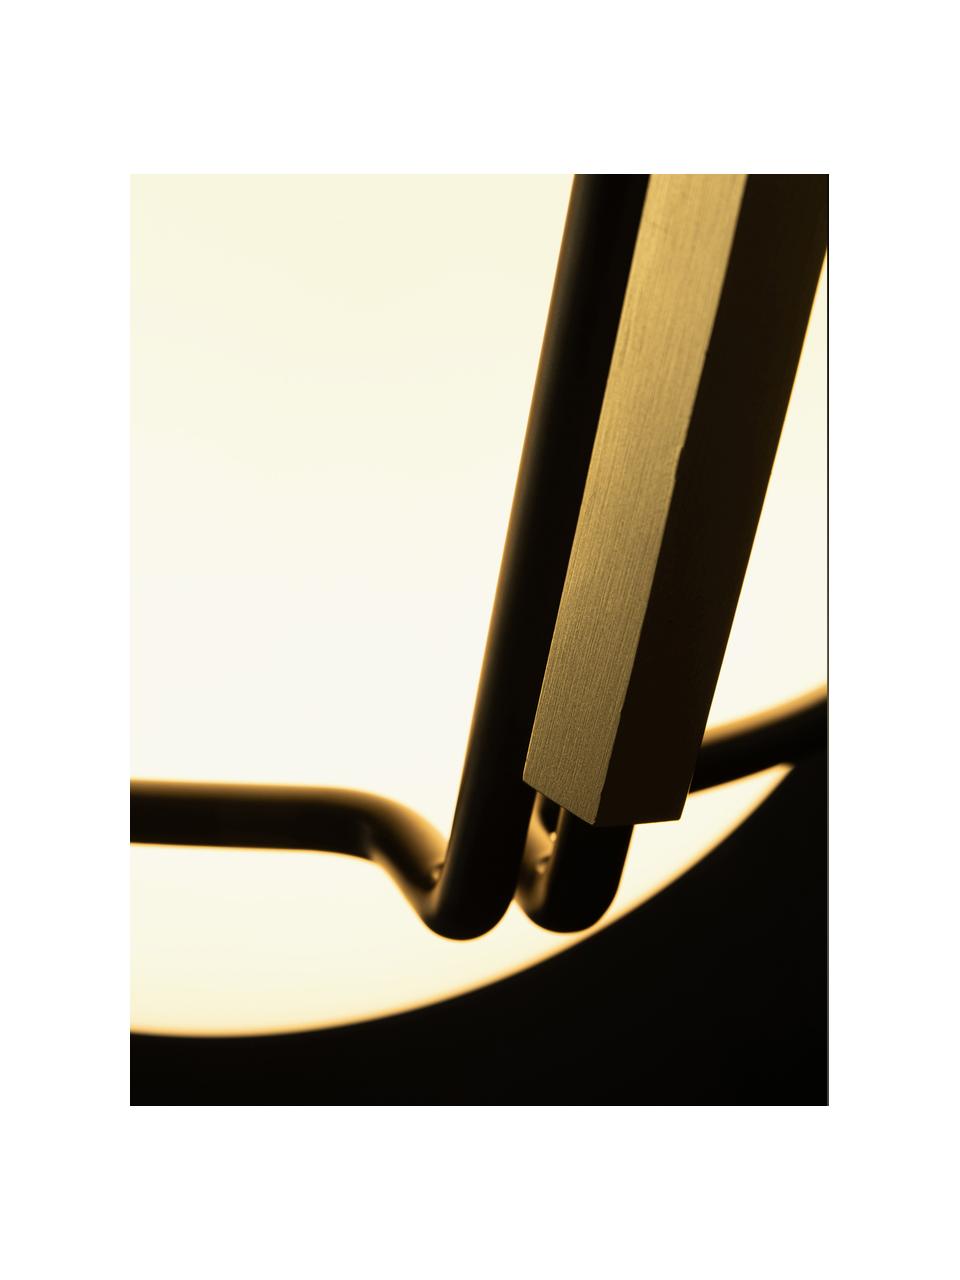 Lámpara arco artesanal grande LED Alicanto, Pantalla: vidrio, Estructura: metal recubierto, Cable: plástico, Negro, dorado, Al 230 cm